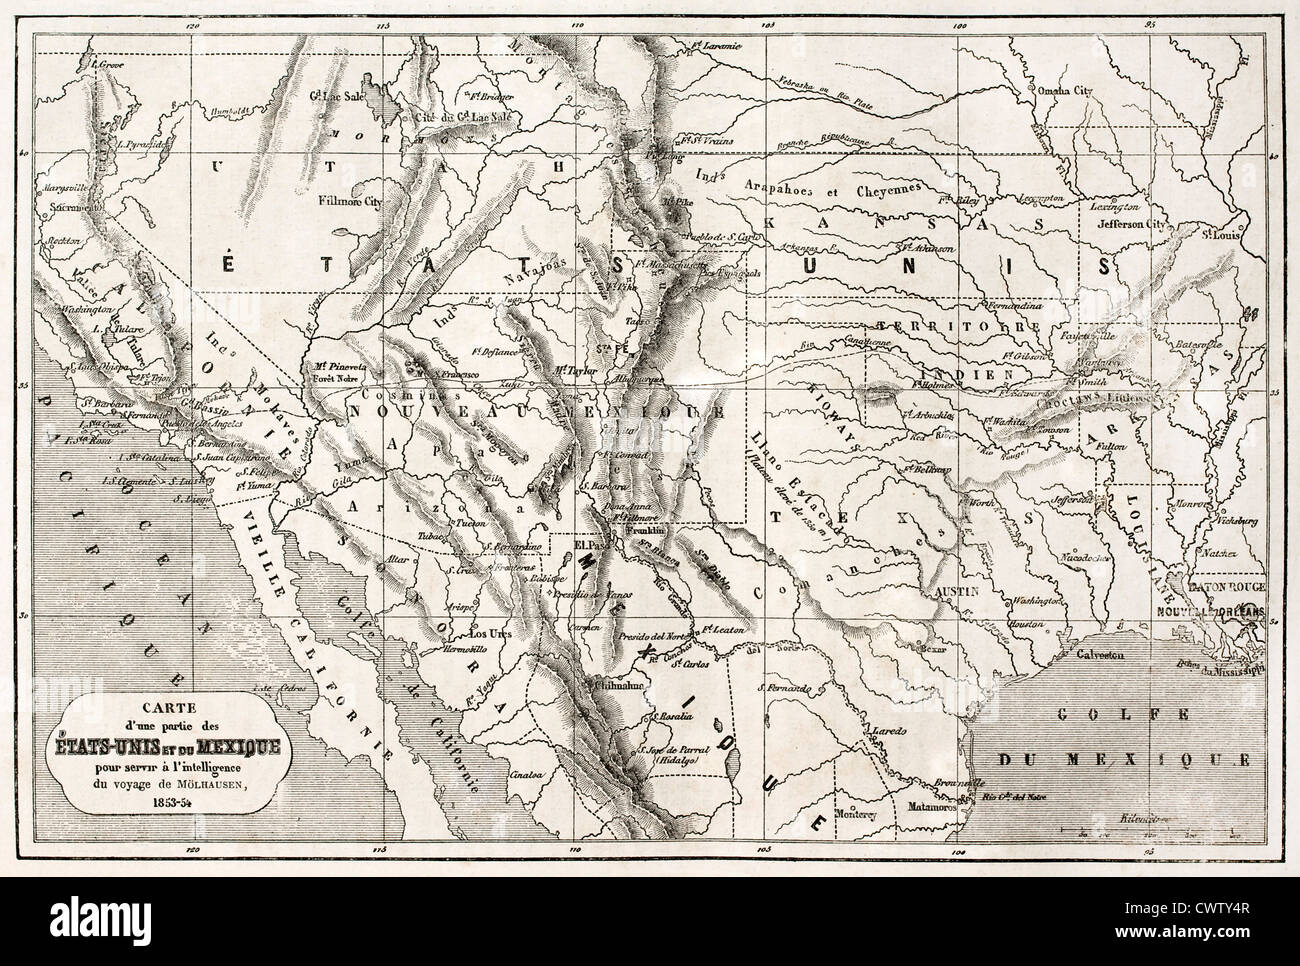 Mapa antiguo del norte de México y el suroeste de EE.UU. Foto de stock